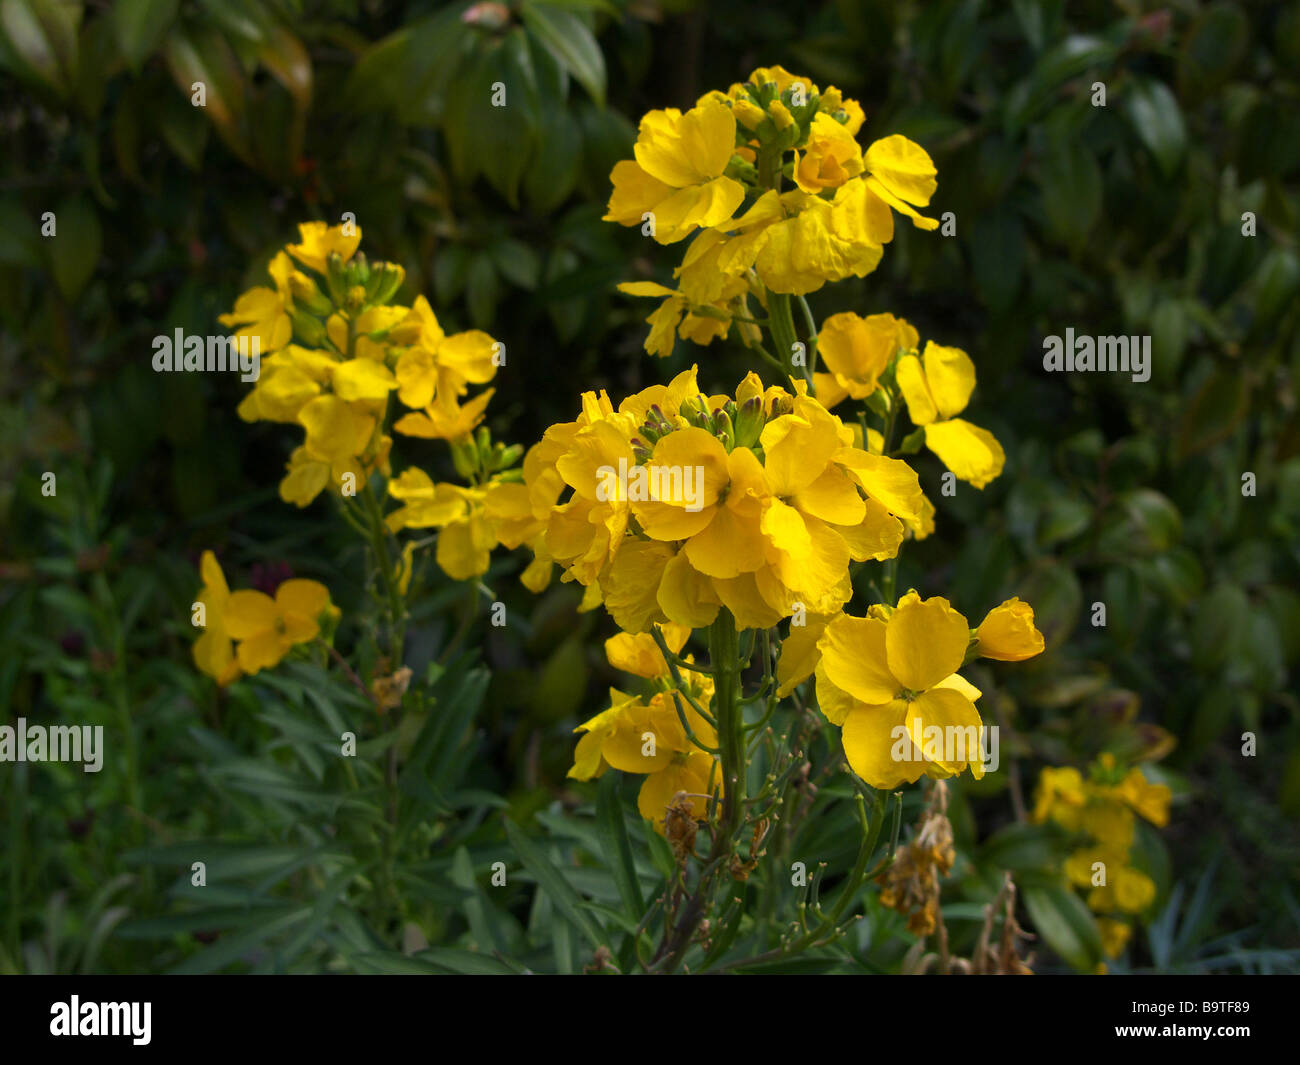 Common Wallflower [Erysimum cheiri] Stock Photo